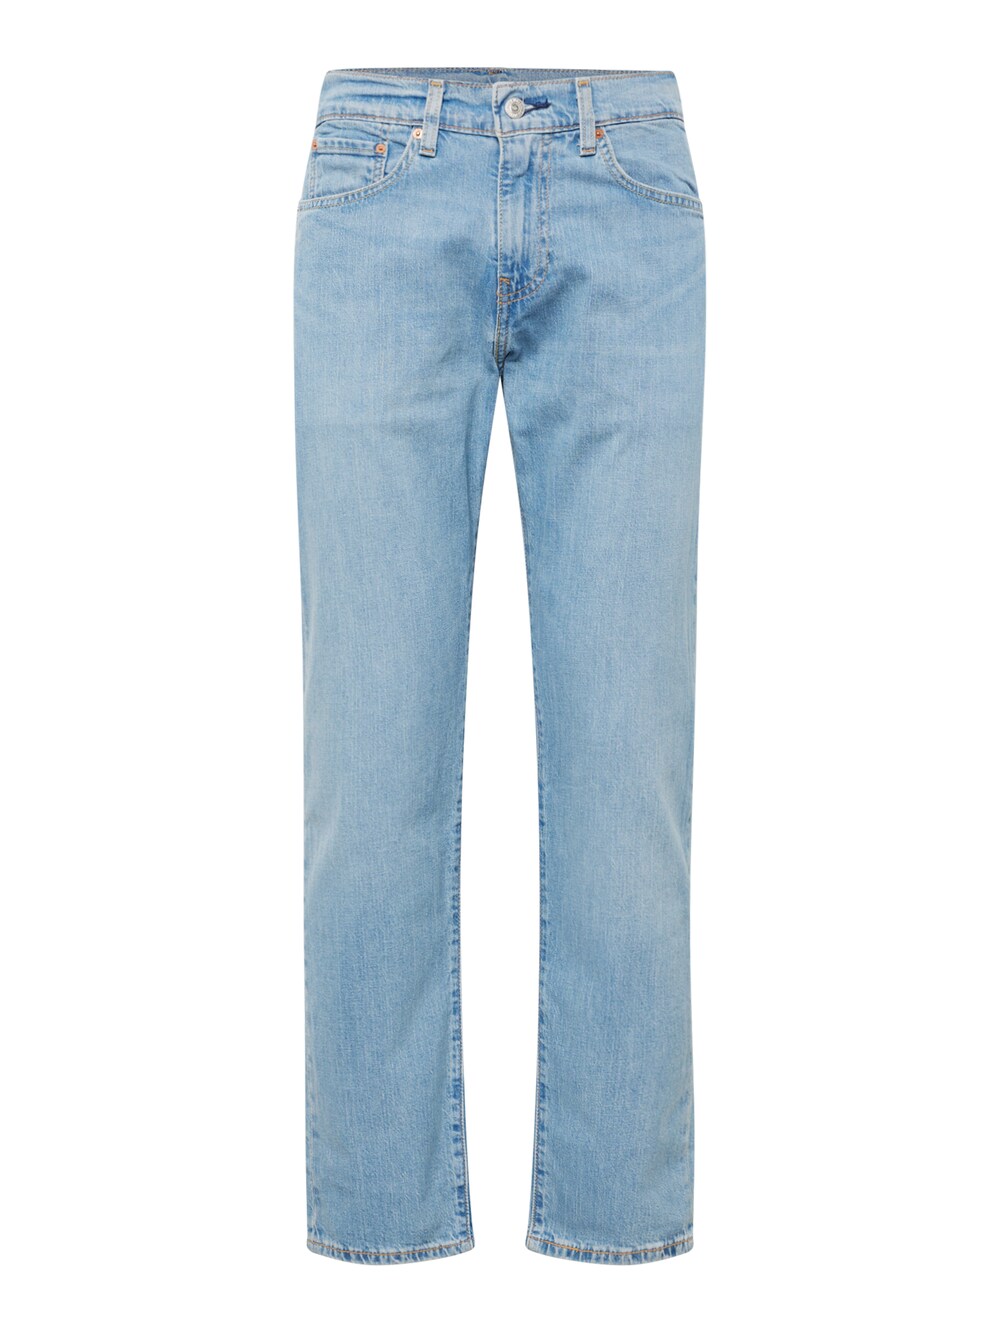 Зауженные джинсы LEVIS 502, светло-синий зауженные джинсы ombre светло синий